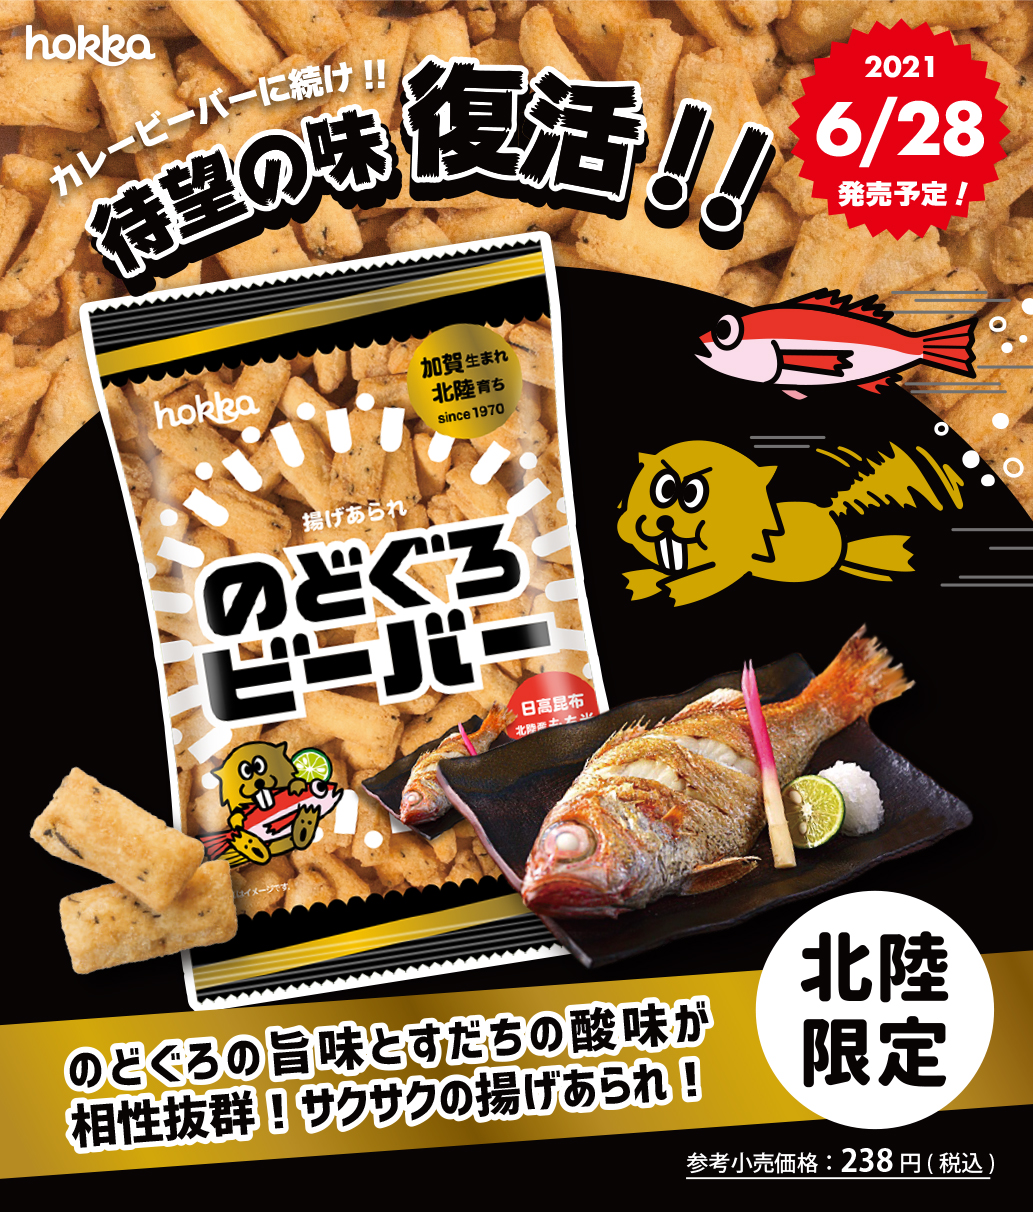 6 28 月 発売 待望の味 のどぐろビーバー が復活 Hokka ホッカ 北陸製菓株式会社